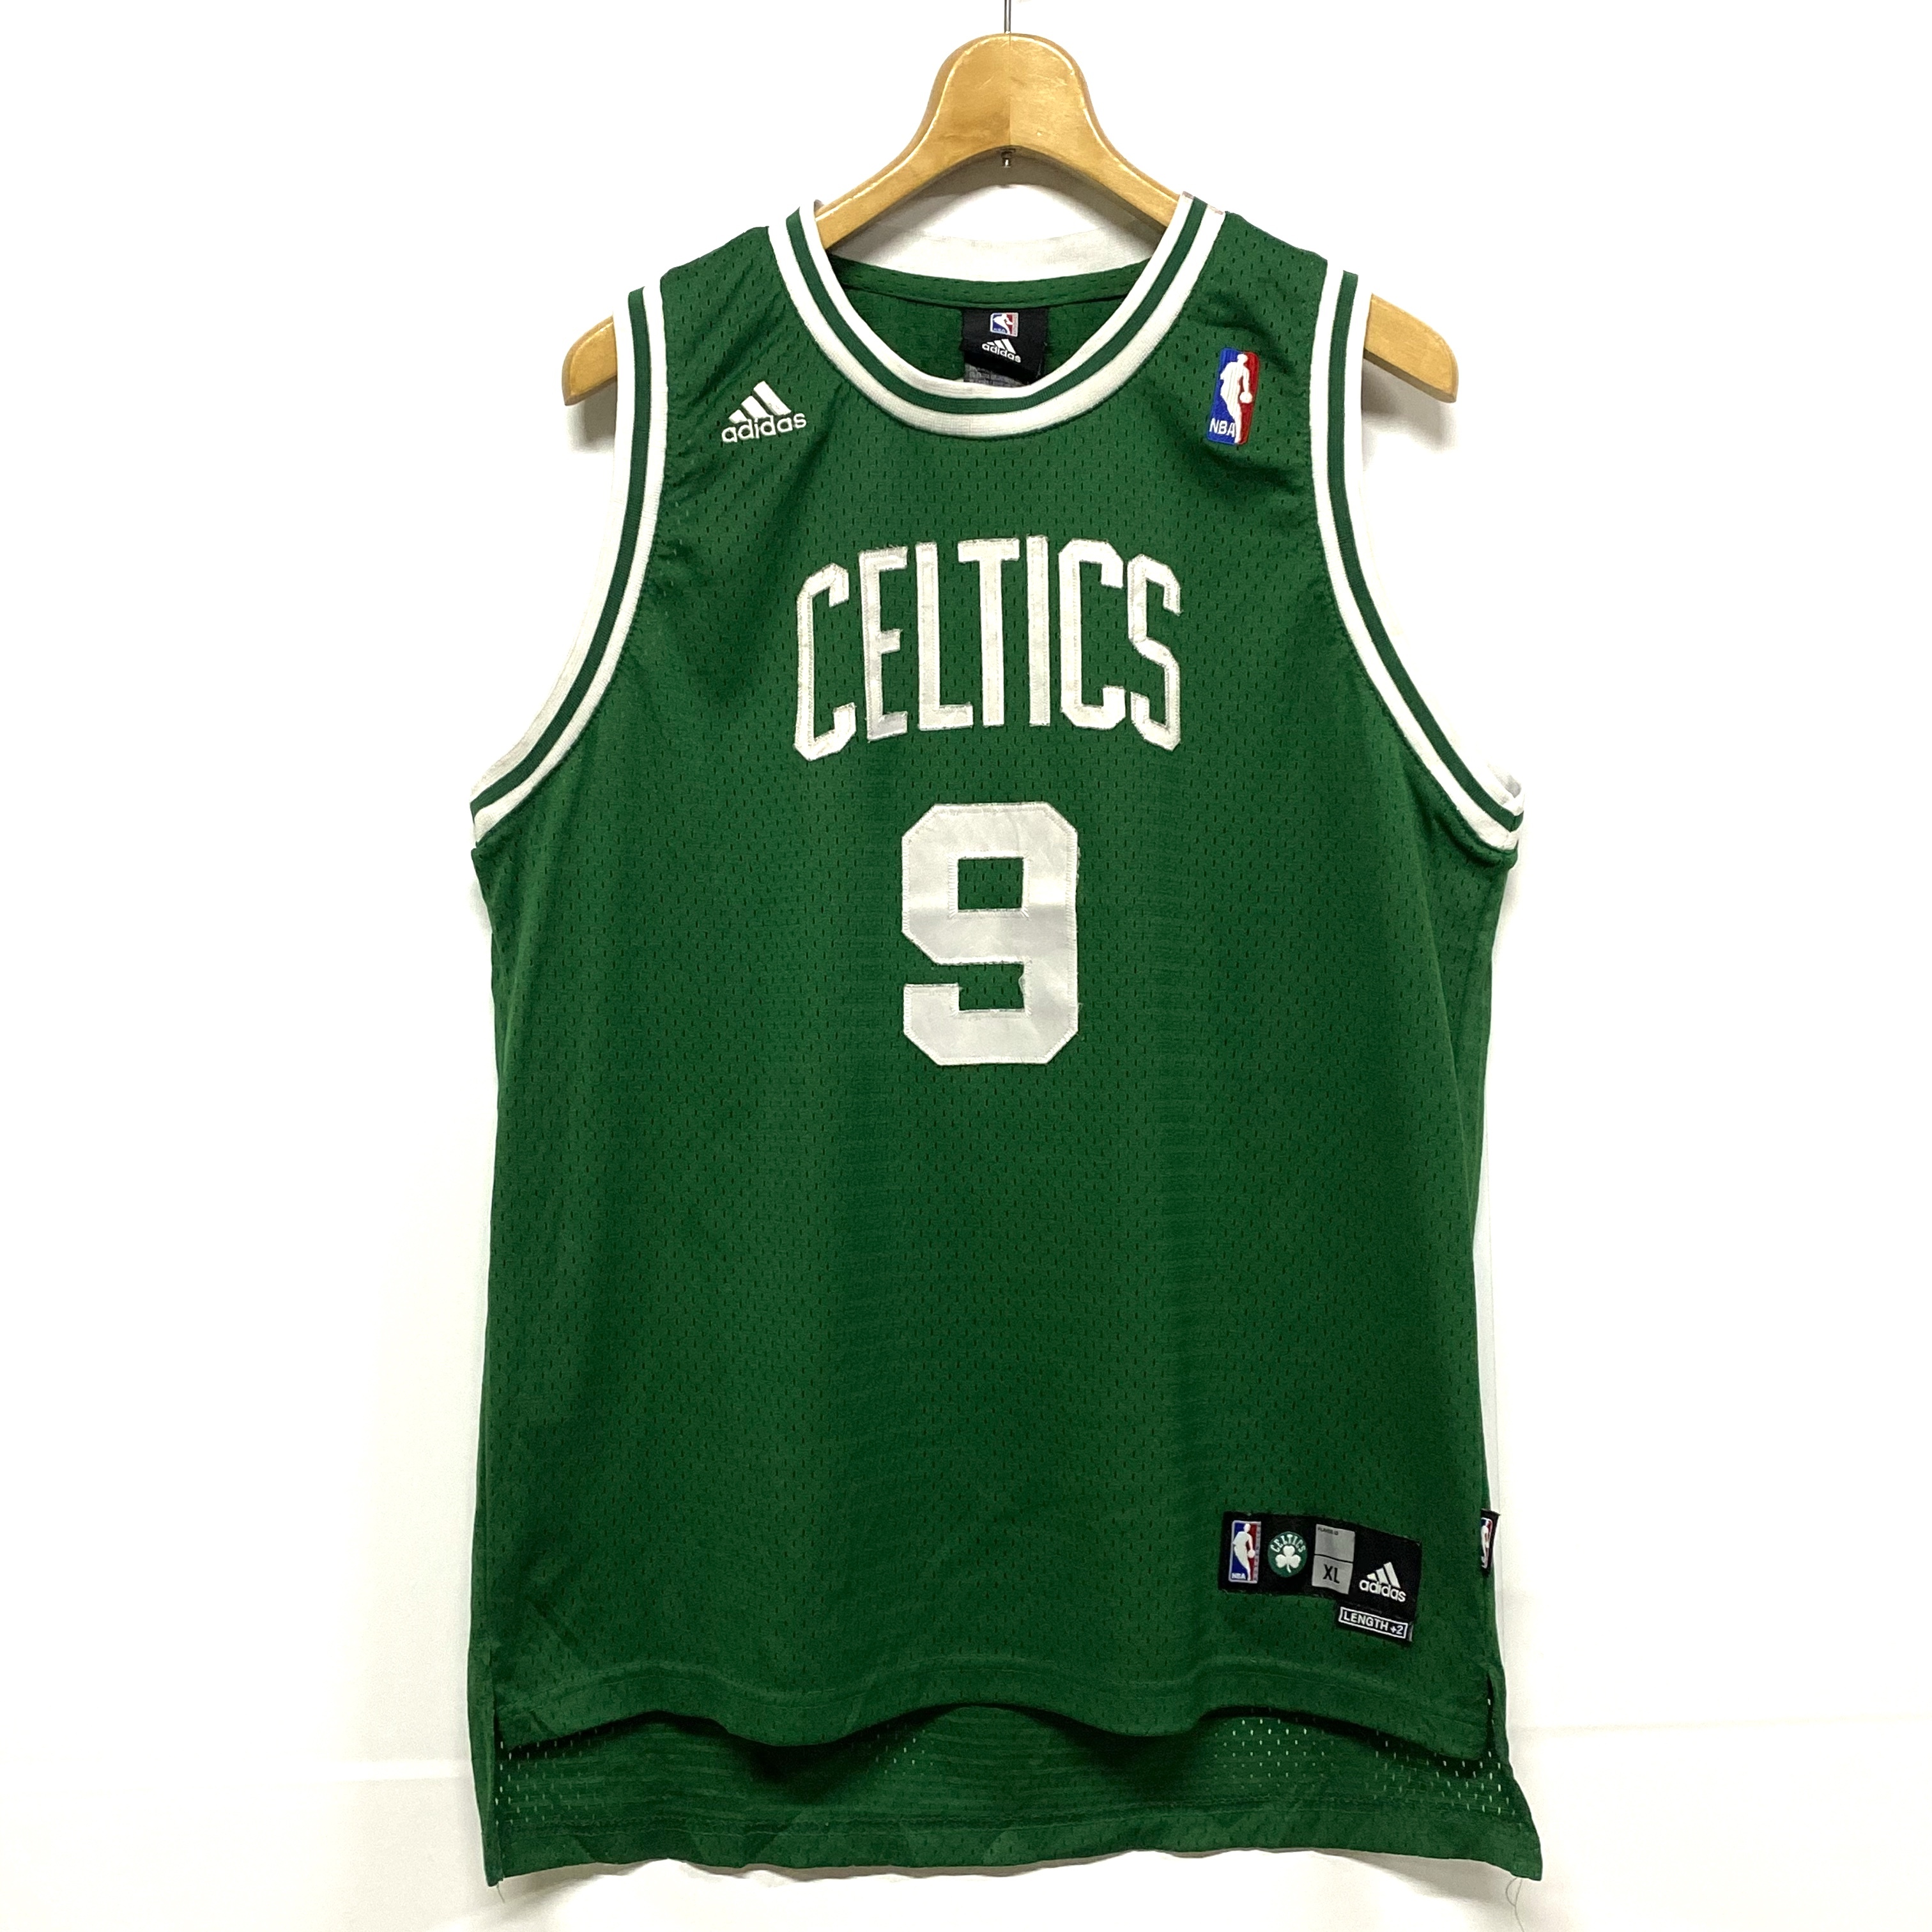 アディダス Adidas Nba Boston Celtics ボストンセルティックス Rondo ラジョン ロンド ゲームシャツ レプリカユニフォーム 古着 ゲームシャツ Cave 古着屋 公式 古着通販サイト All Off開催中